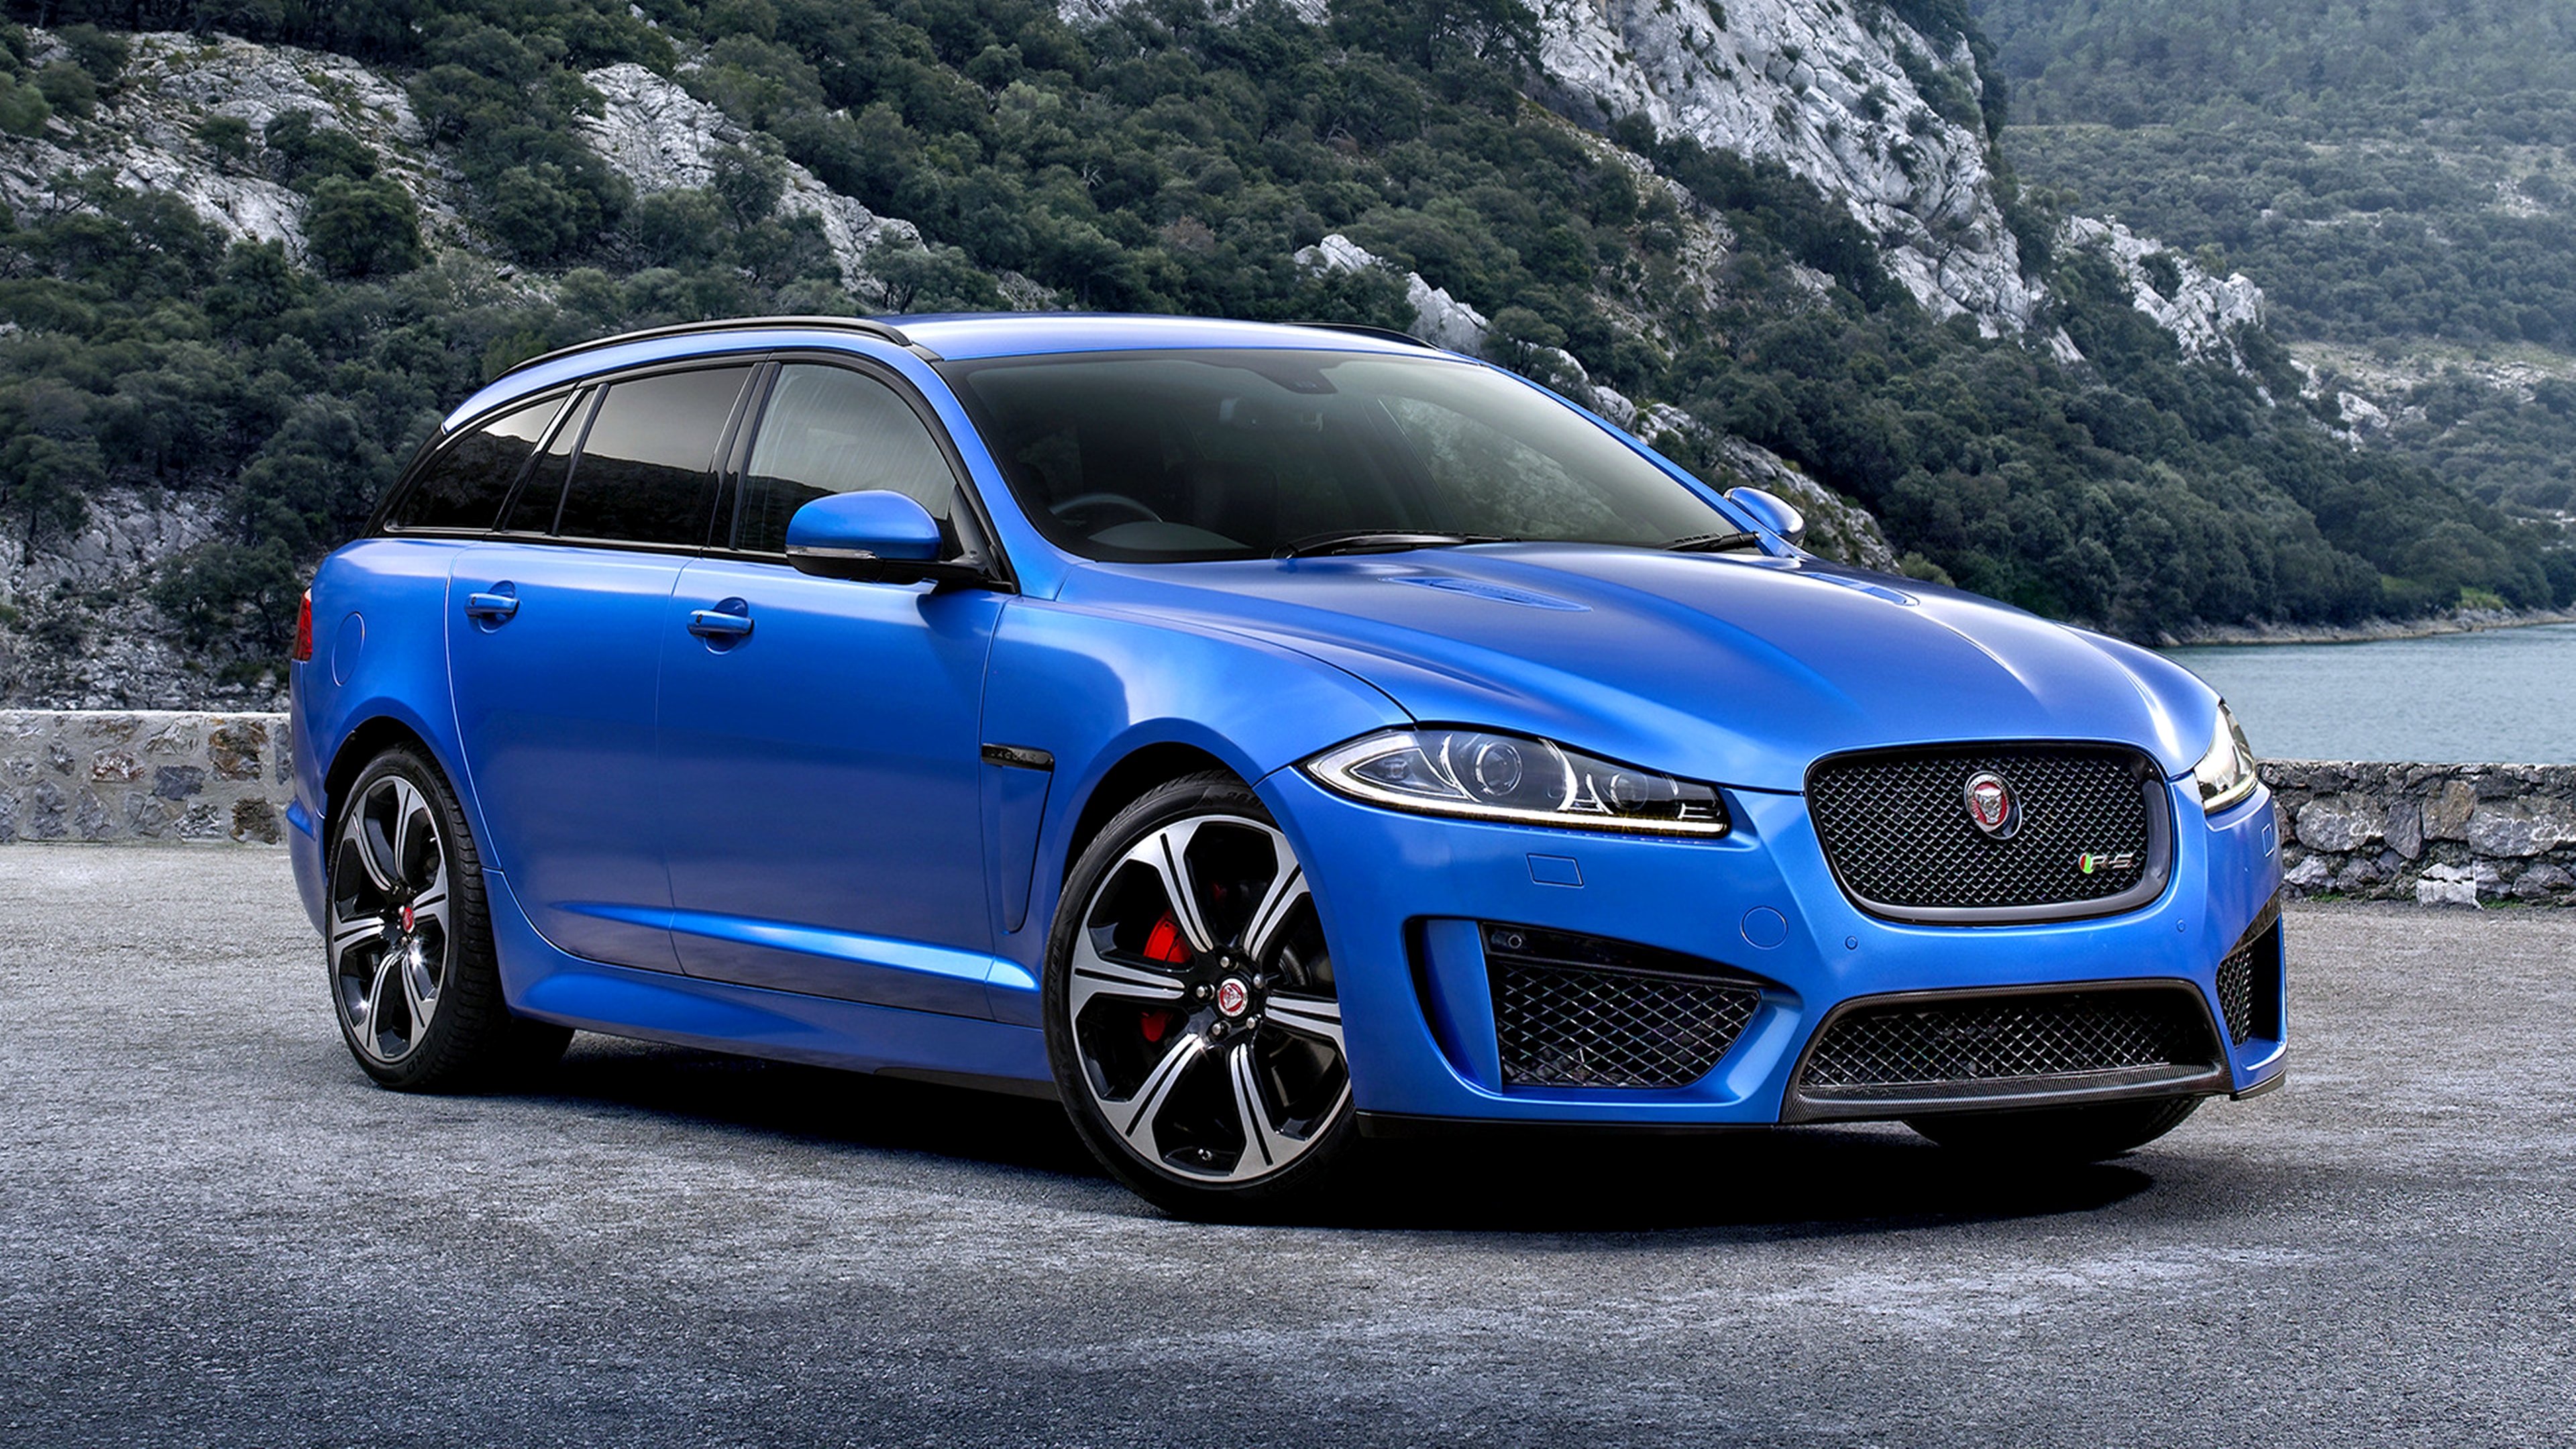 2014, Jaguar, Xfr s, Sportbrake, Uk, Landscape, Blue, Sea, Motors, Speed, Cars Wallpaper